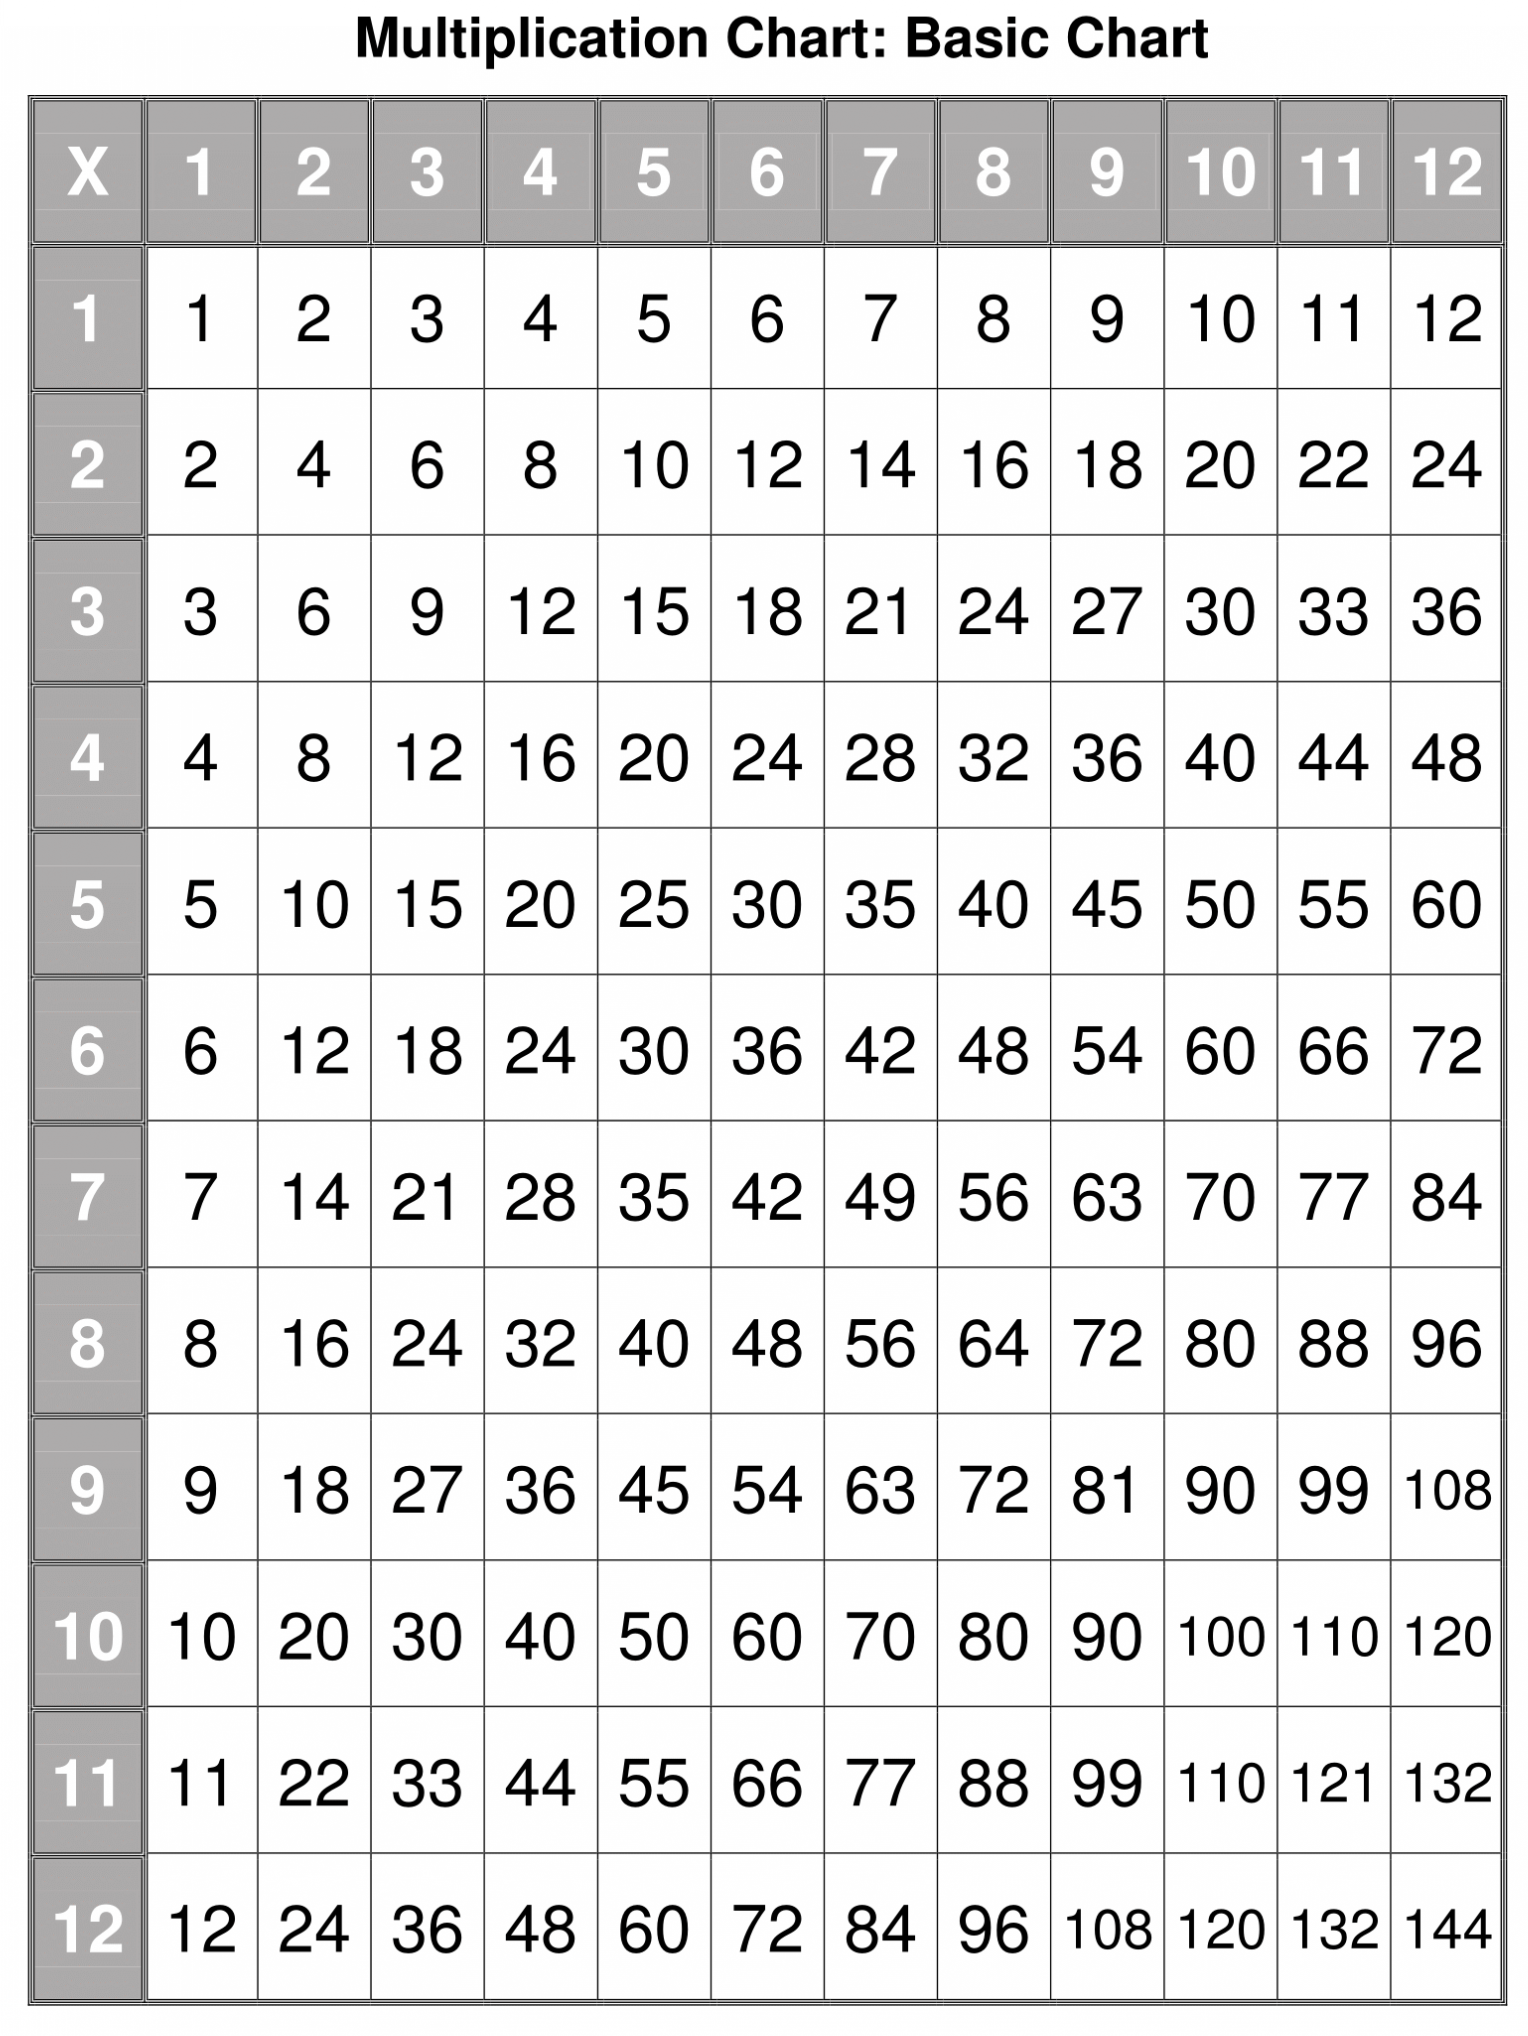 Multiplication Charts | Multiplication Chart, Multiplication